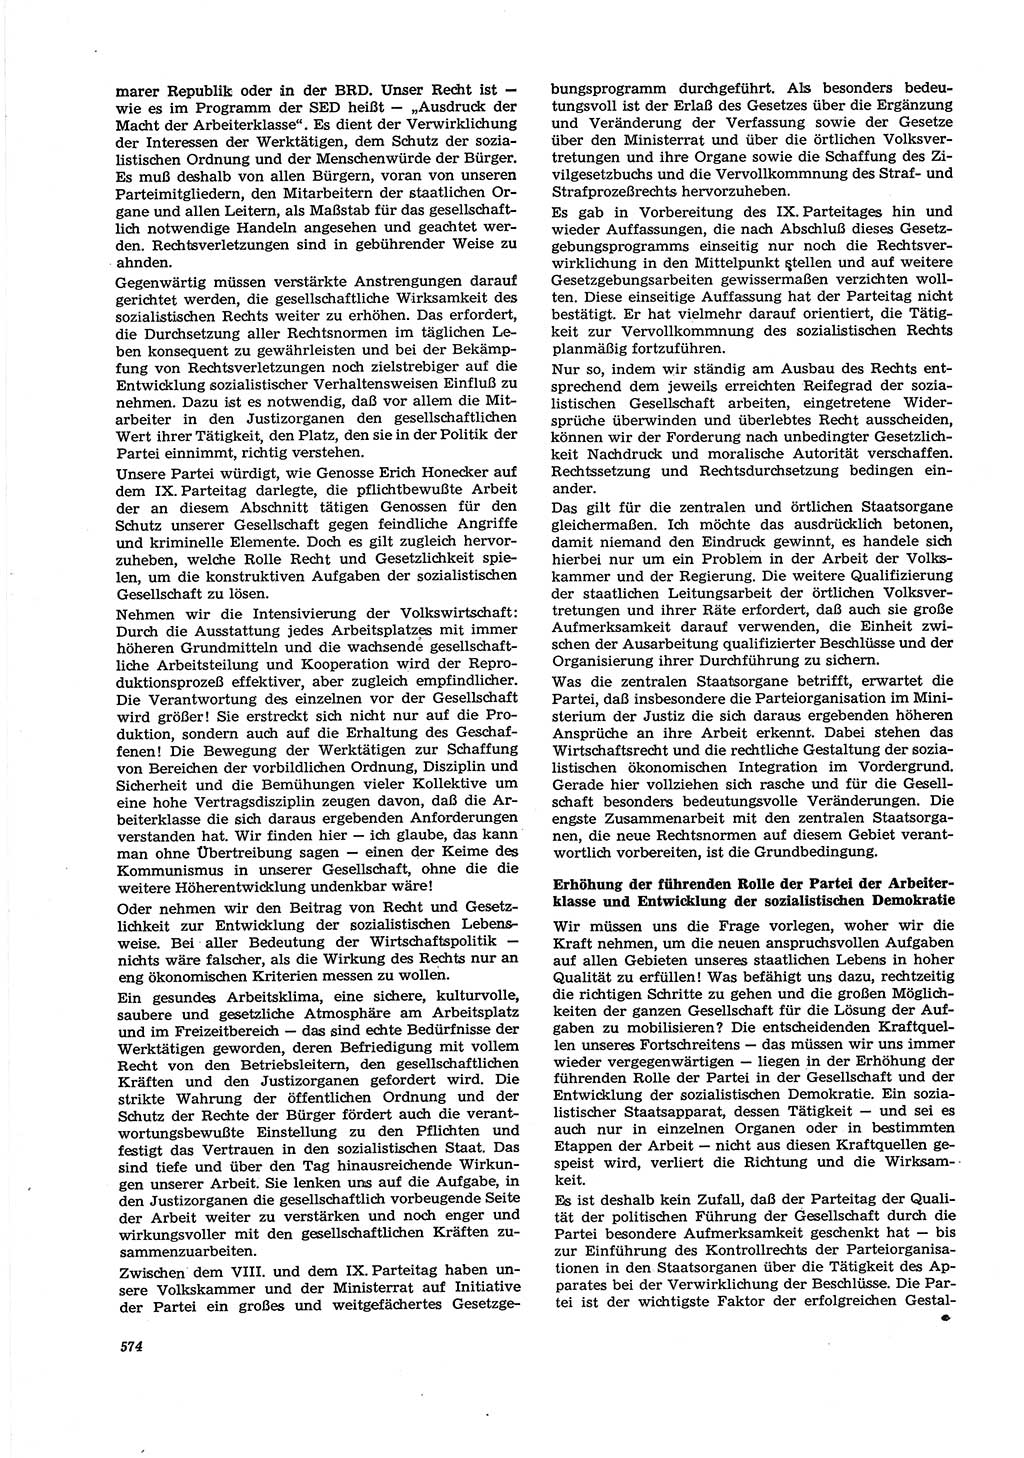 Neue Justiz (NJ), Zeitschrift für Recht und Rechtswissenschaft [Deutsche Demokratische Republik (DDR)], 30. Jahrgang 1976, Seite 574 (NJ DDR 1976, S. 574)